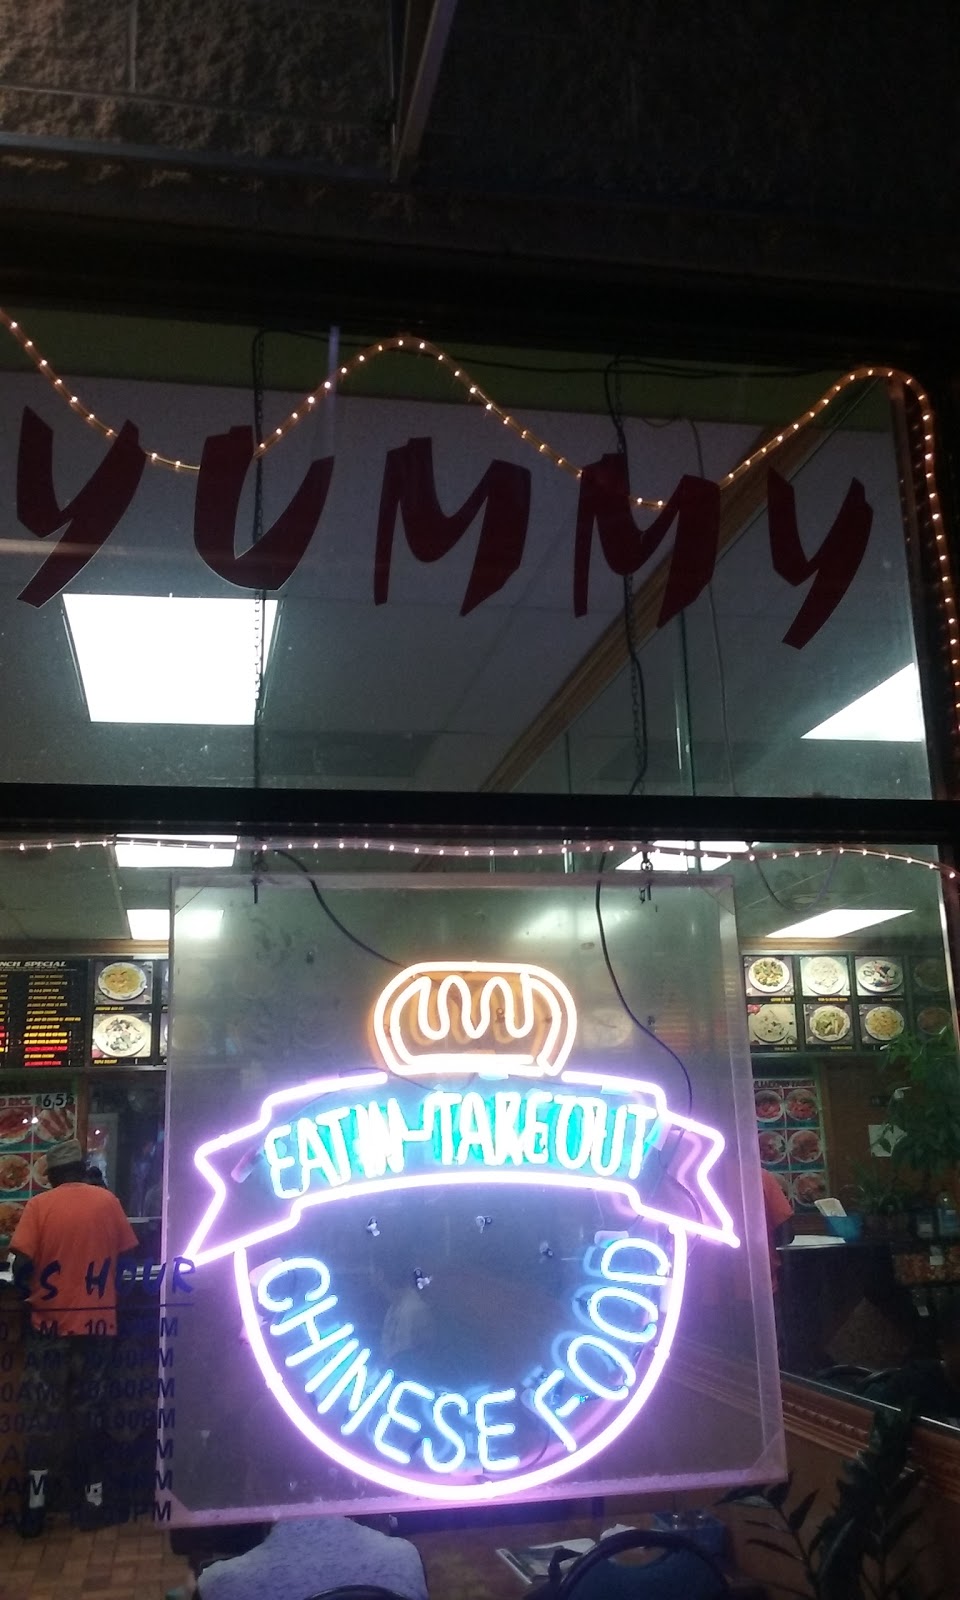 Yummy Chinese Restaurant | 2125 Starmount Pkwy, Chesapeake, VA 23321, USA | Phone: (757) 465-8090